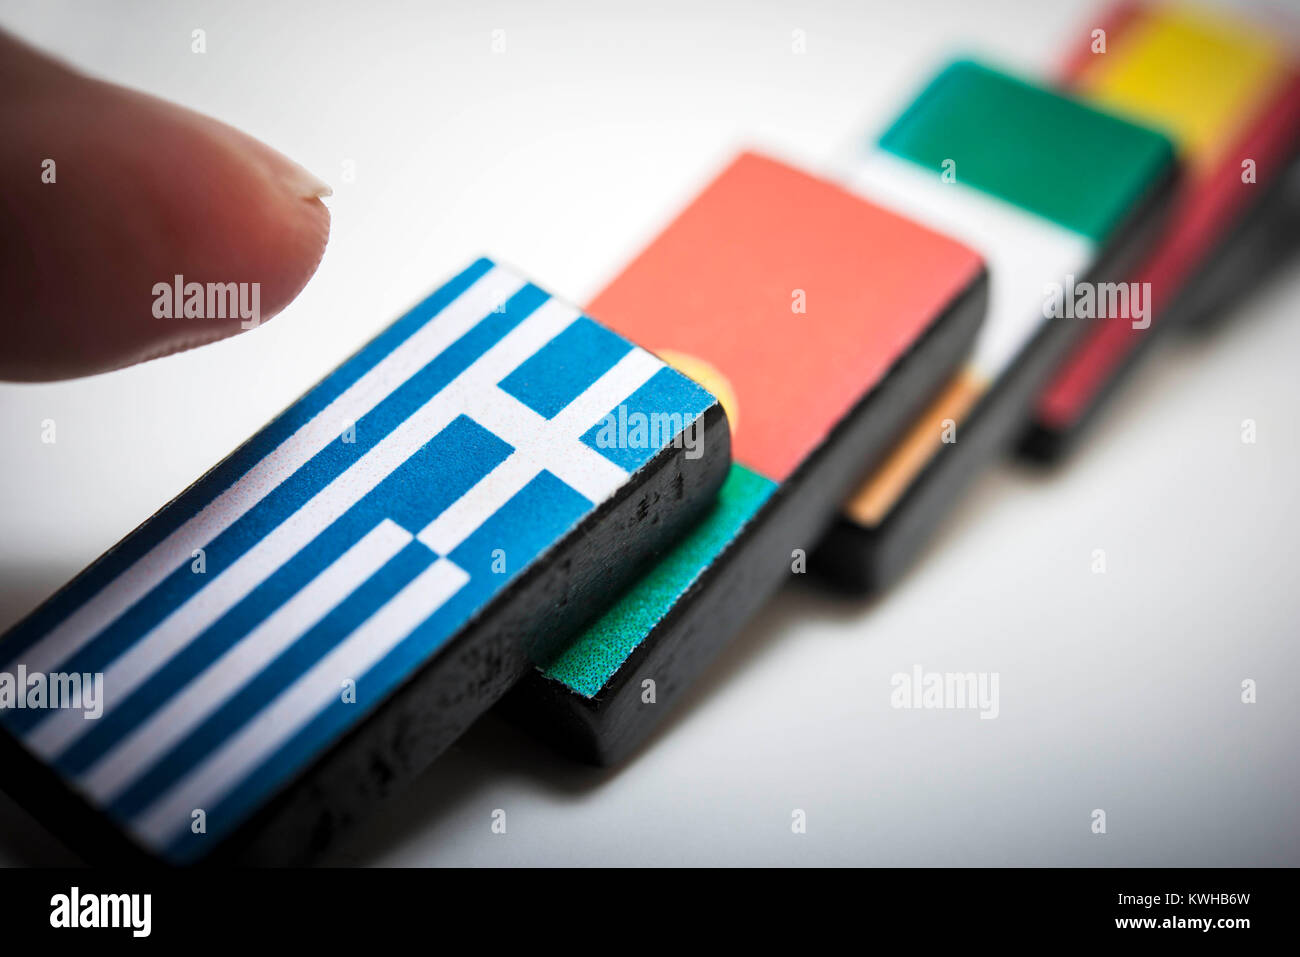 Gefallenen Dominosteine mit europäischen Fahnen, symbolische Foto Dominoeffekt zu Grexit, UmgestÃ¼rzte Dominosteine mit Europäische¤ischen Fahnen, Symbolfoto Dominoeffek Stockfoto